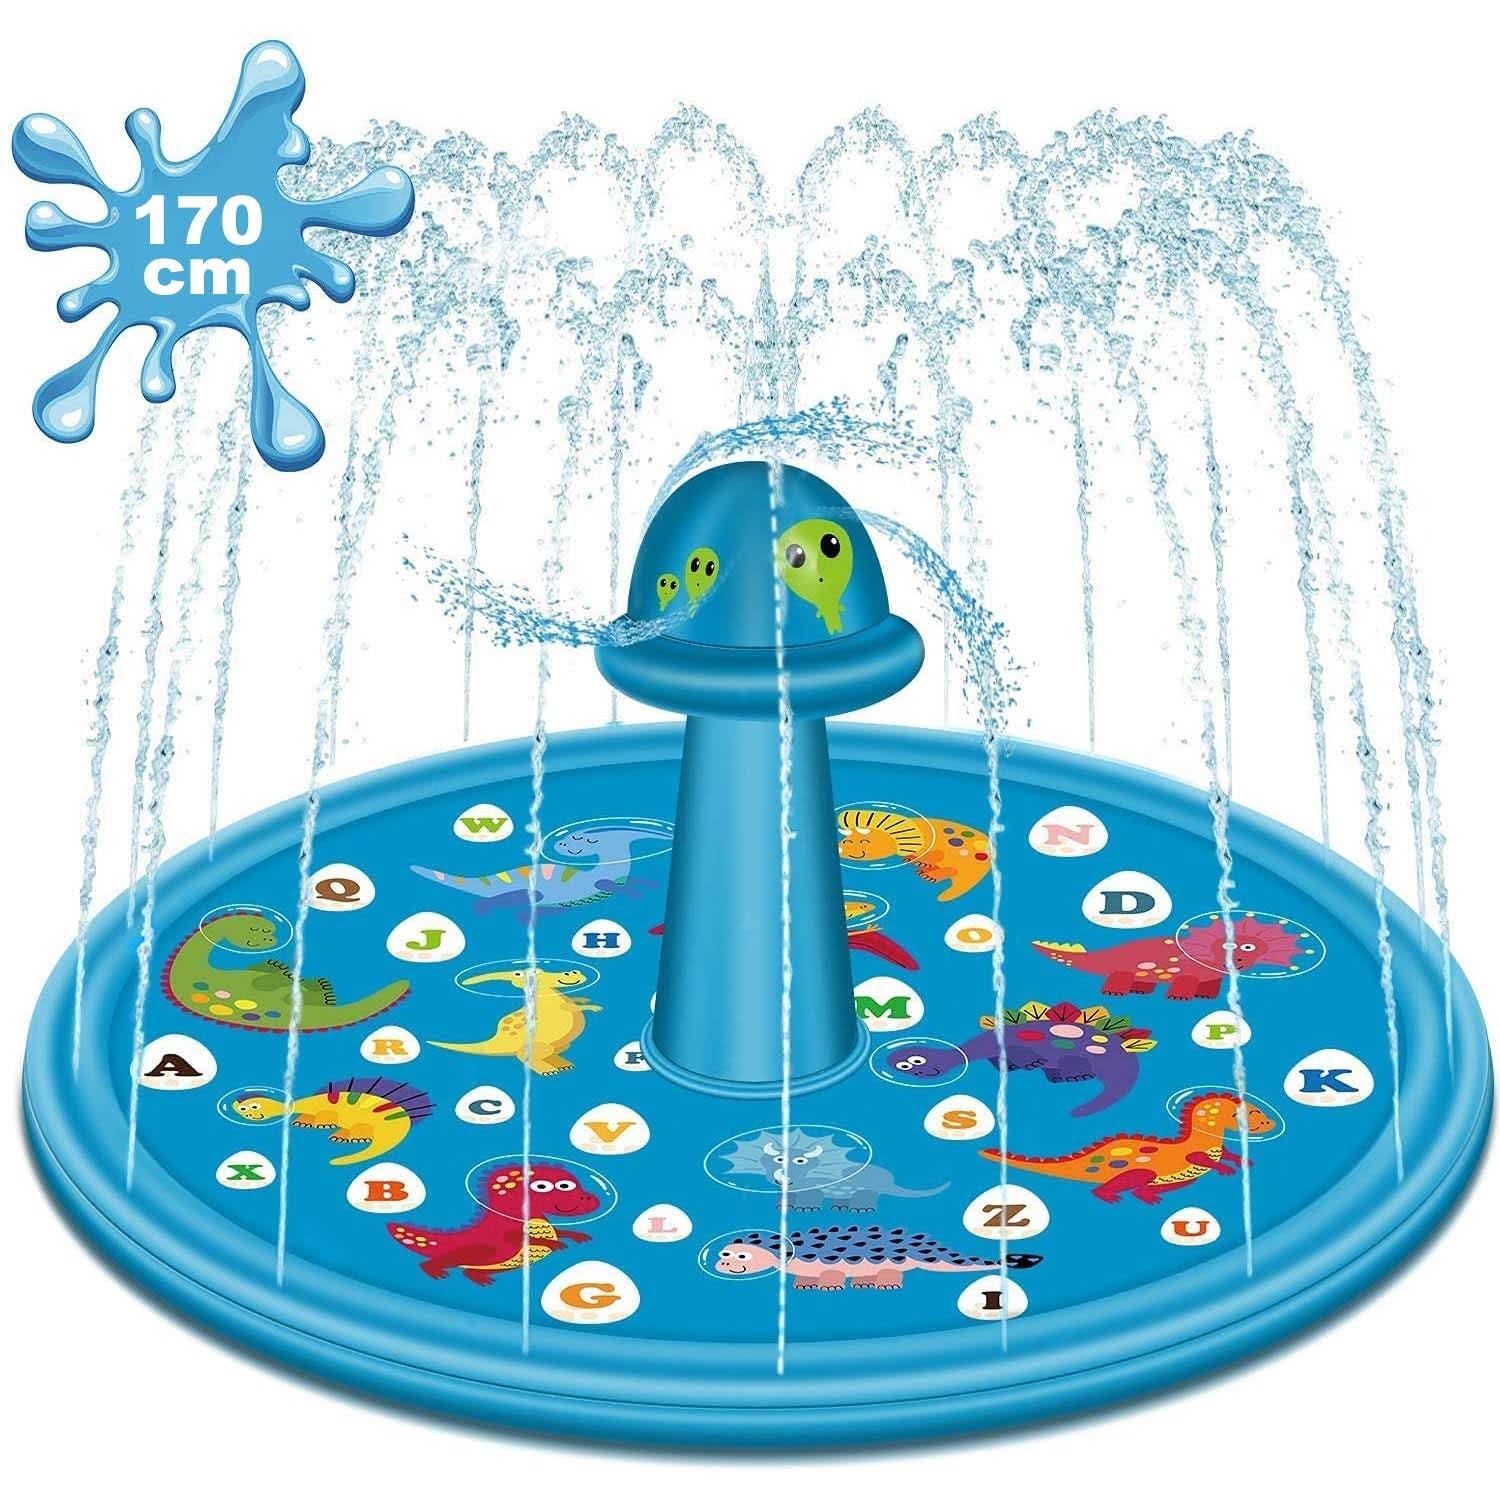 Watermat – Watersproeiers – Speelmat water – Waterspeelgoed buiten – Watermat fontein – Waterpark – 170 cm – Blauw